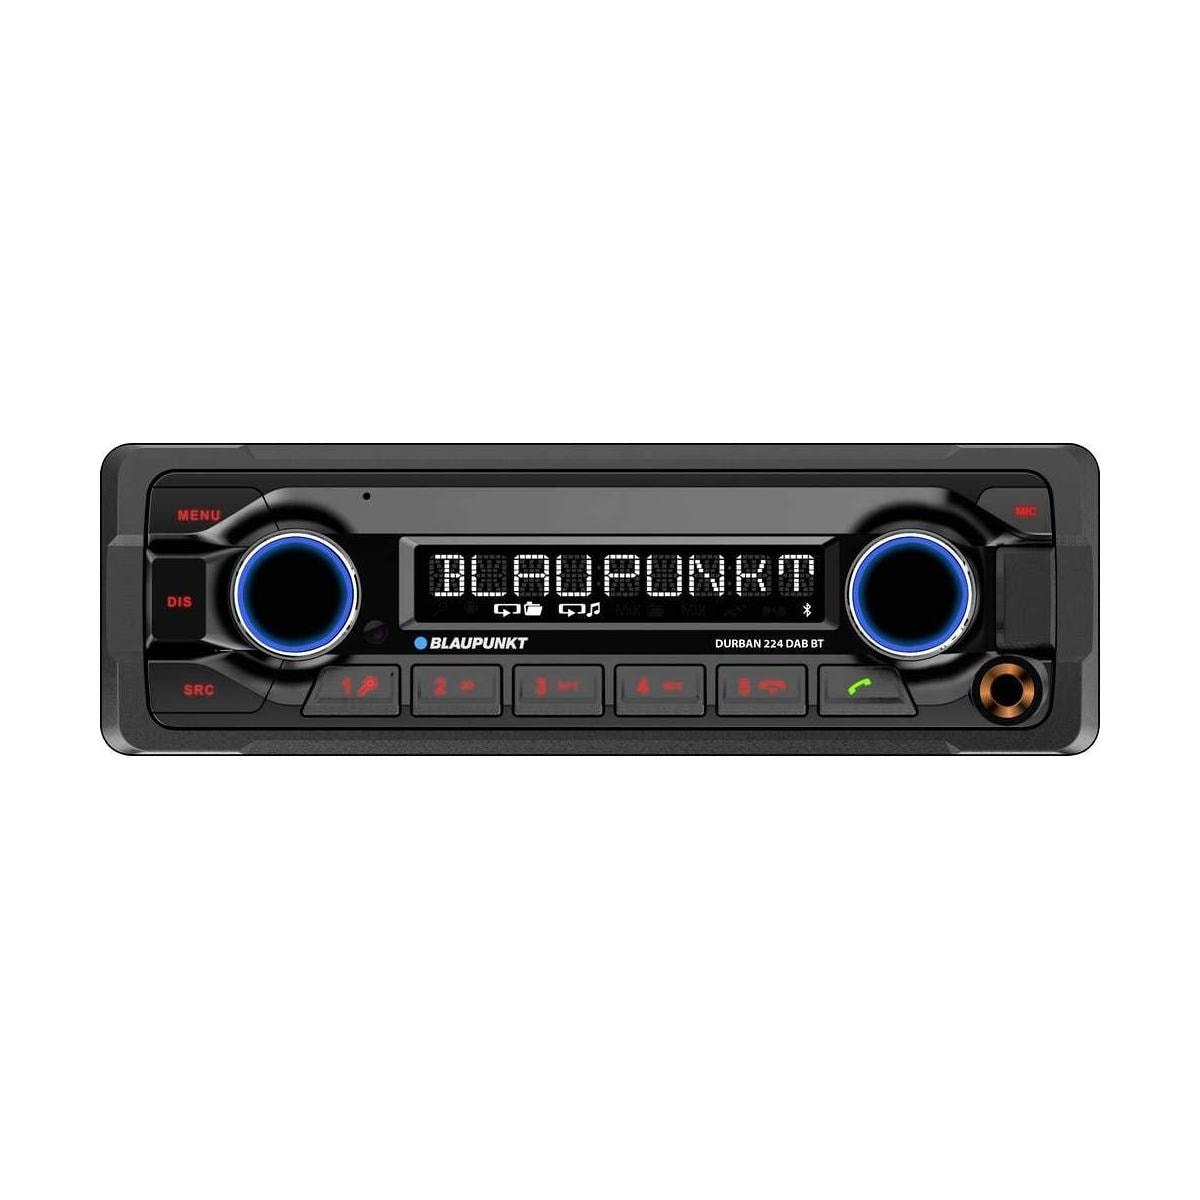 Blaupunkt Durban 224 DAB BT Autoradio Bluetooth-Freisprecheinrichtung Tuner  MP3 schwarz